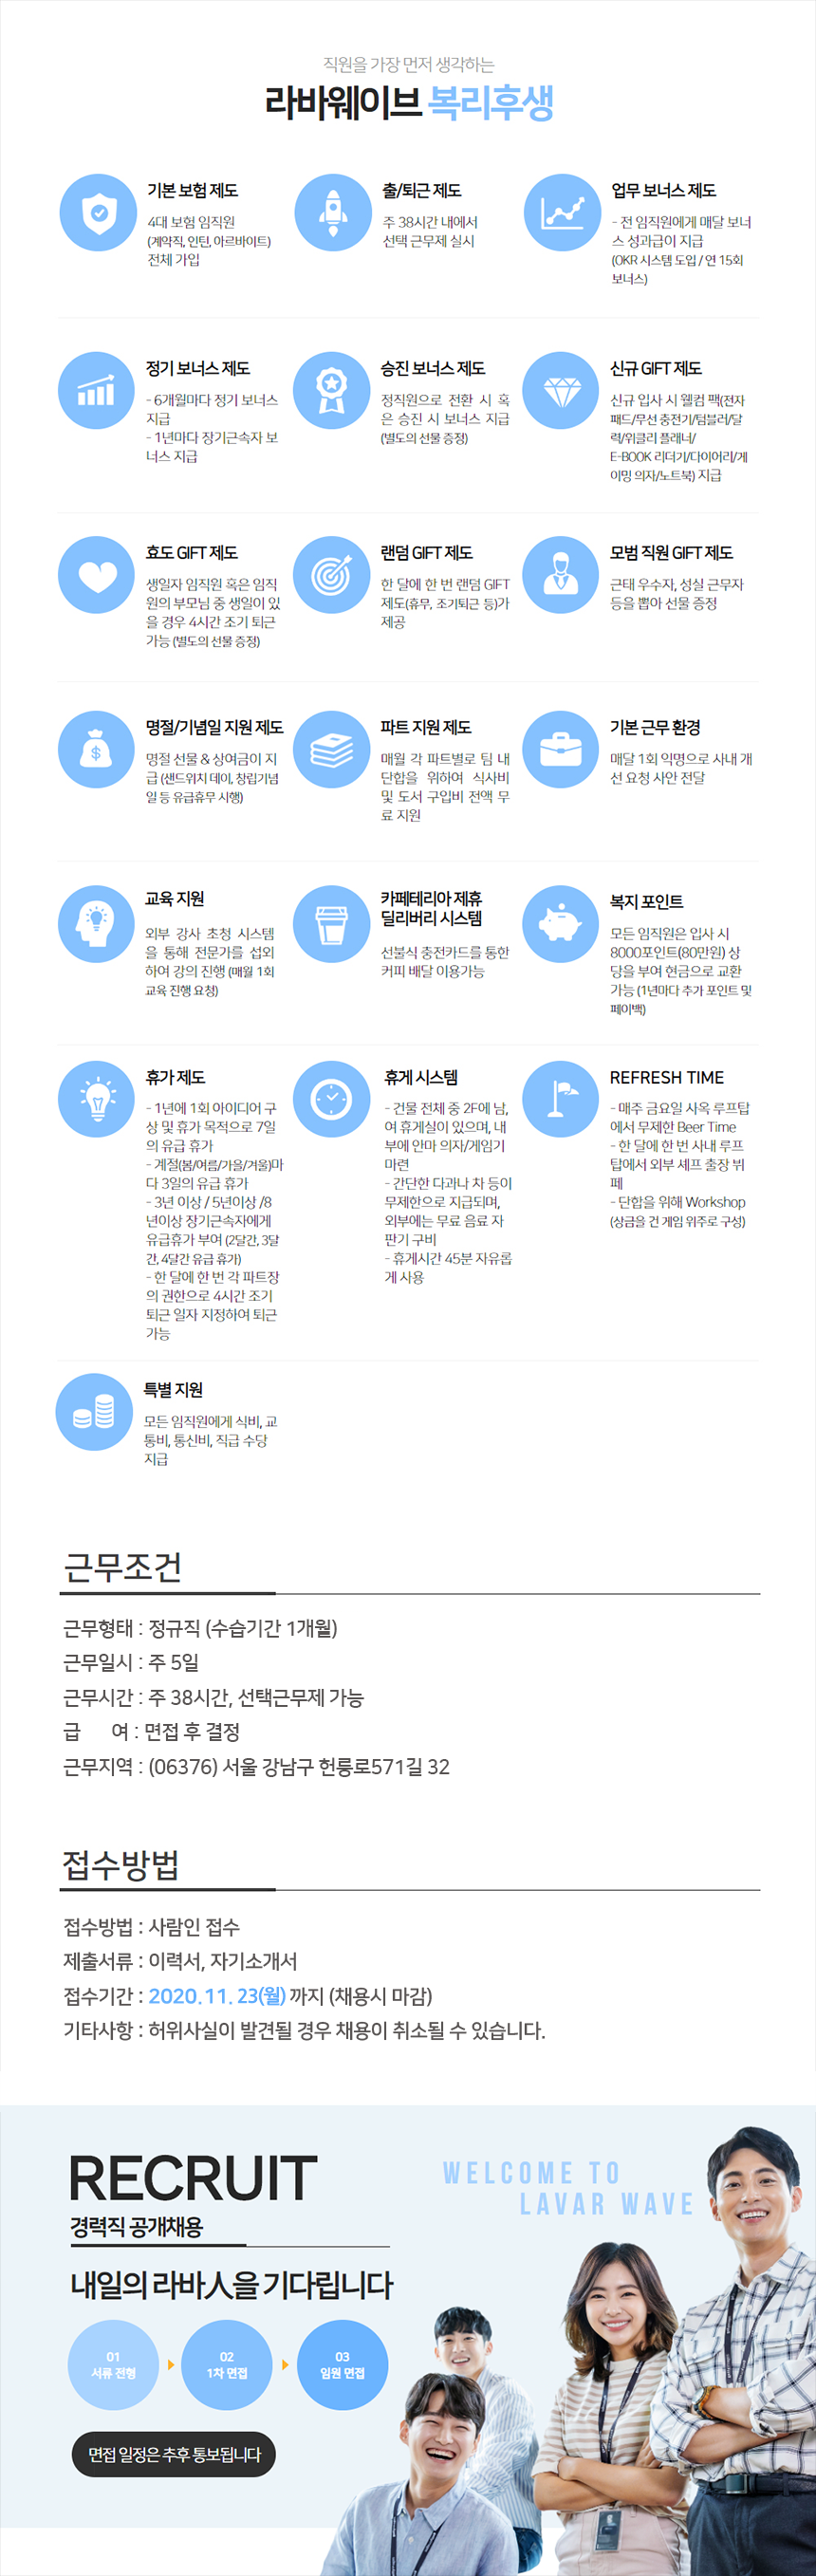 대외협력팀 언론홍보 경력사원 모집